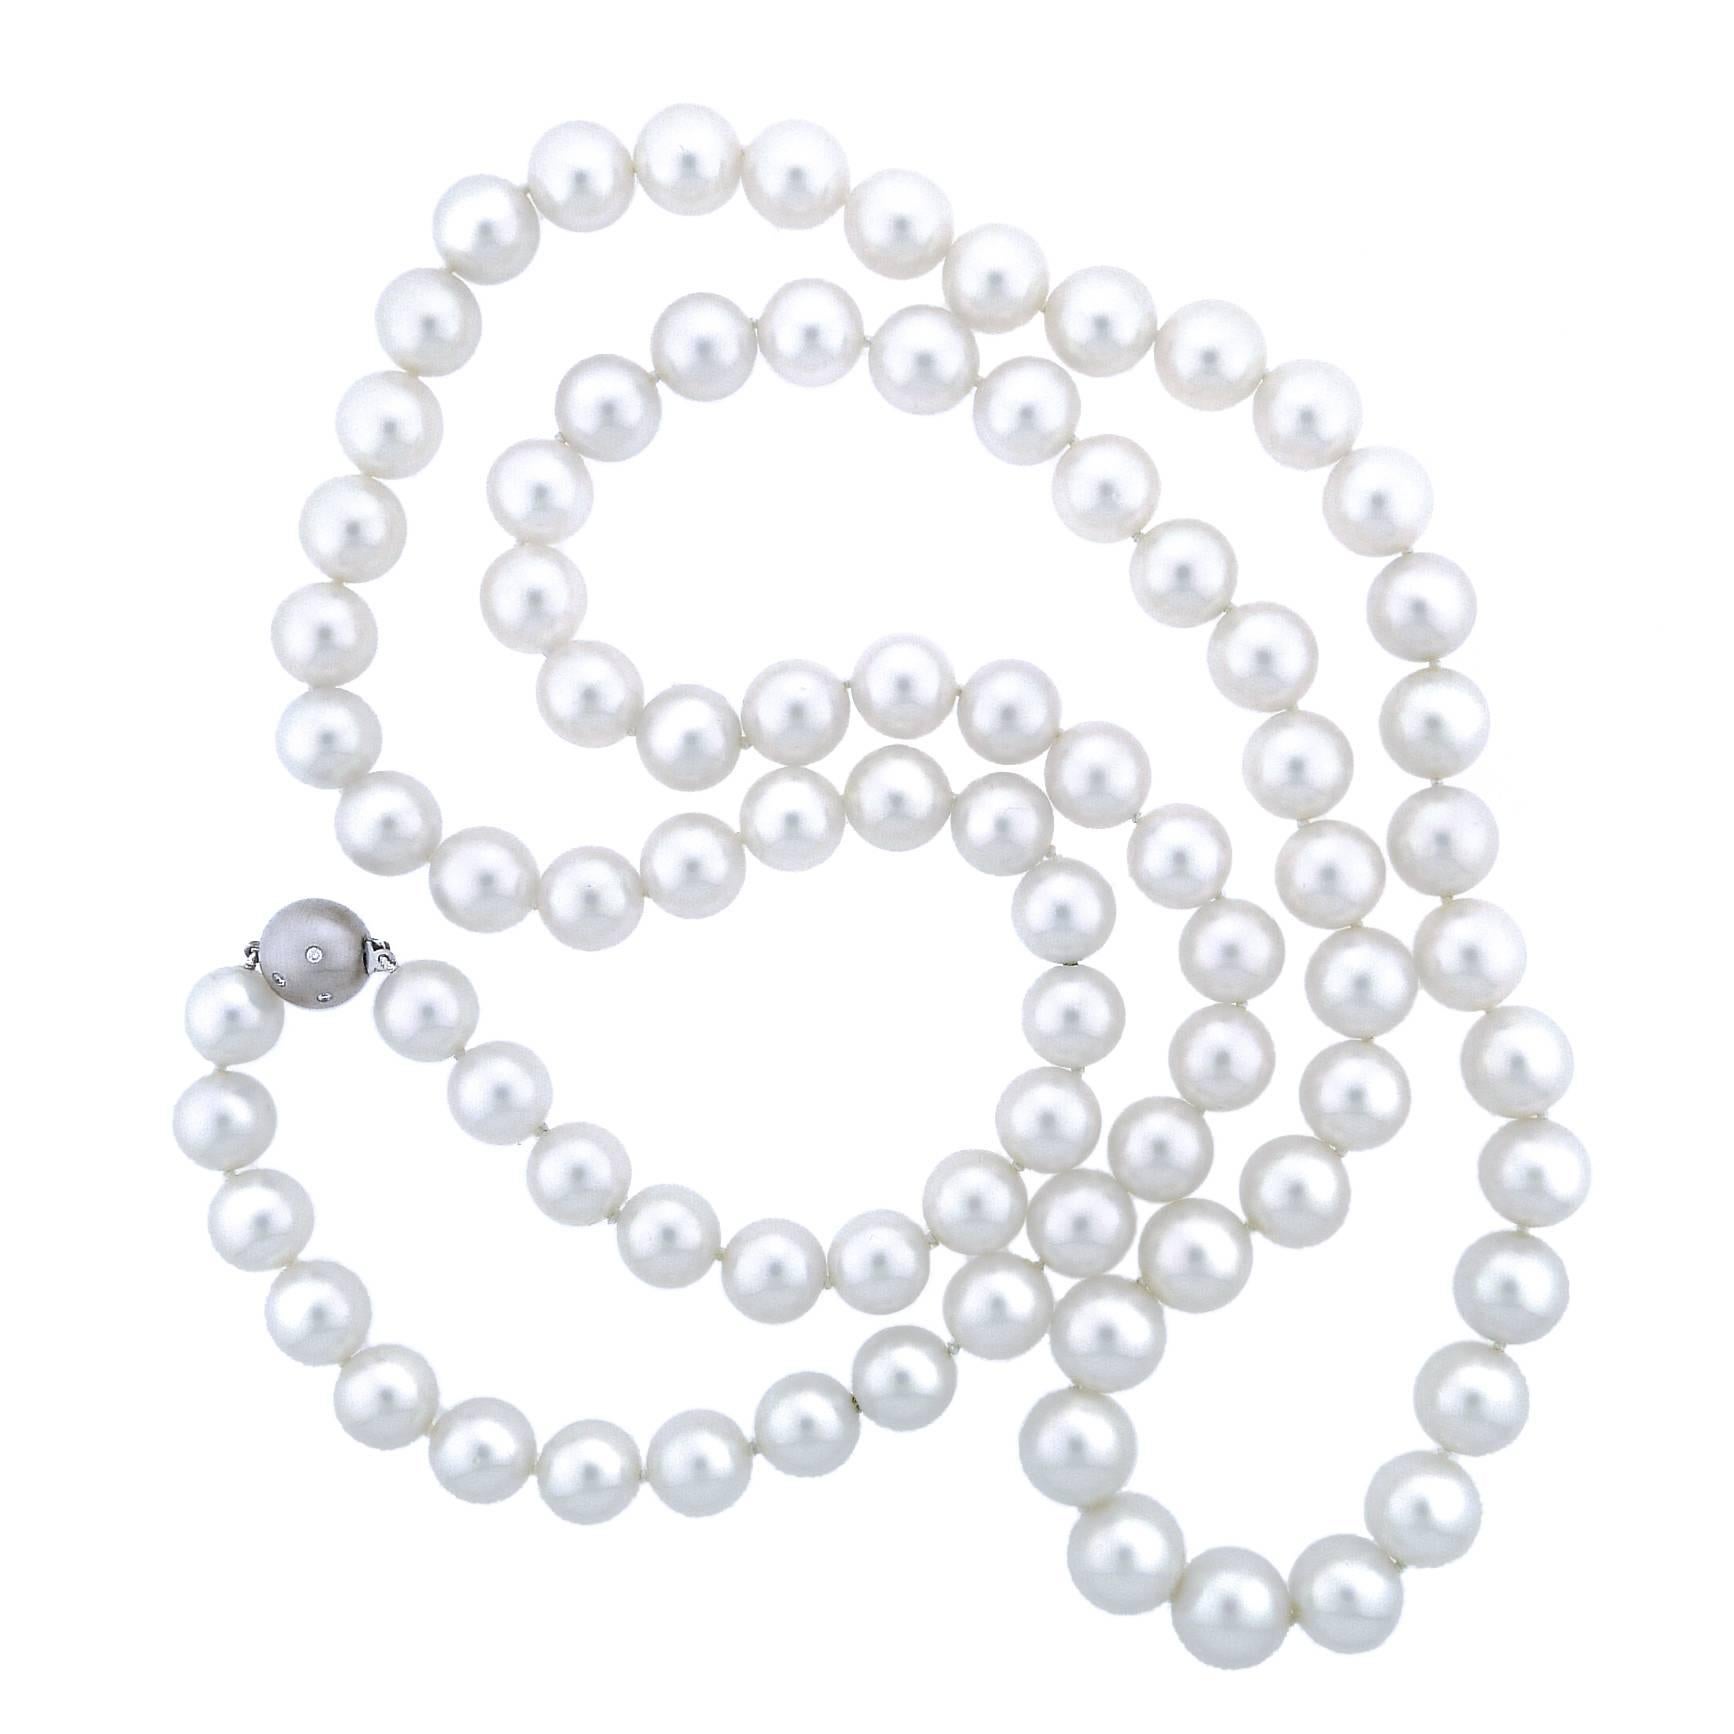 are white pearls rare